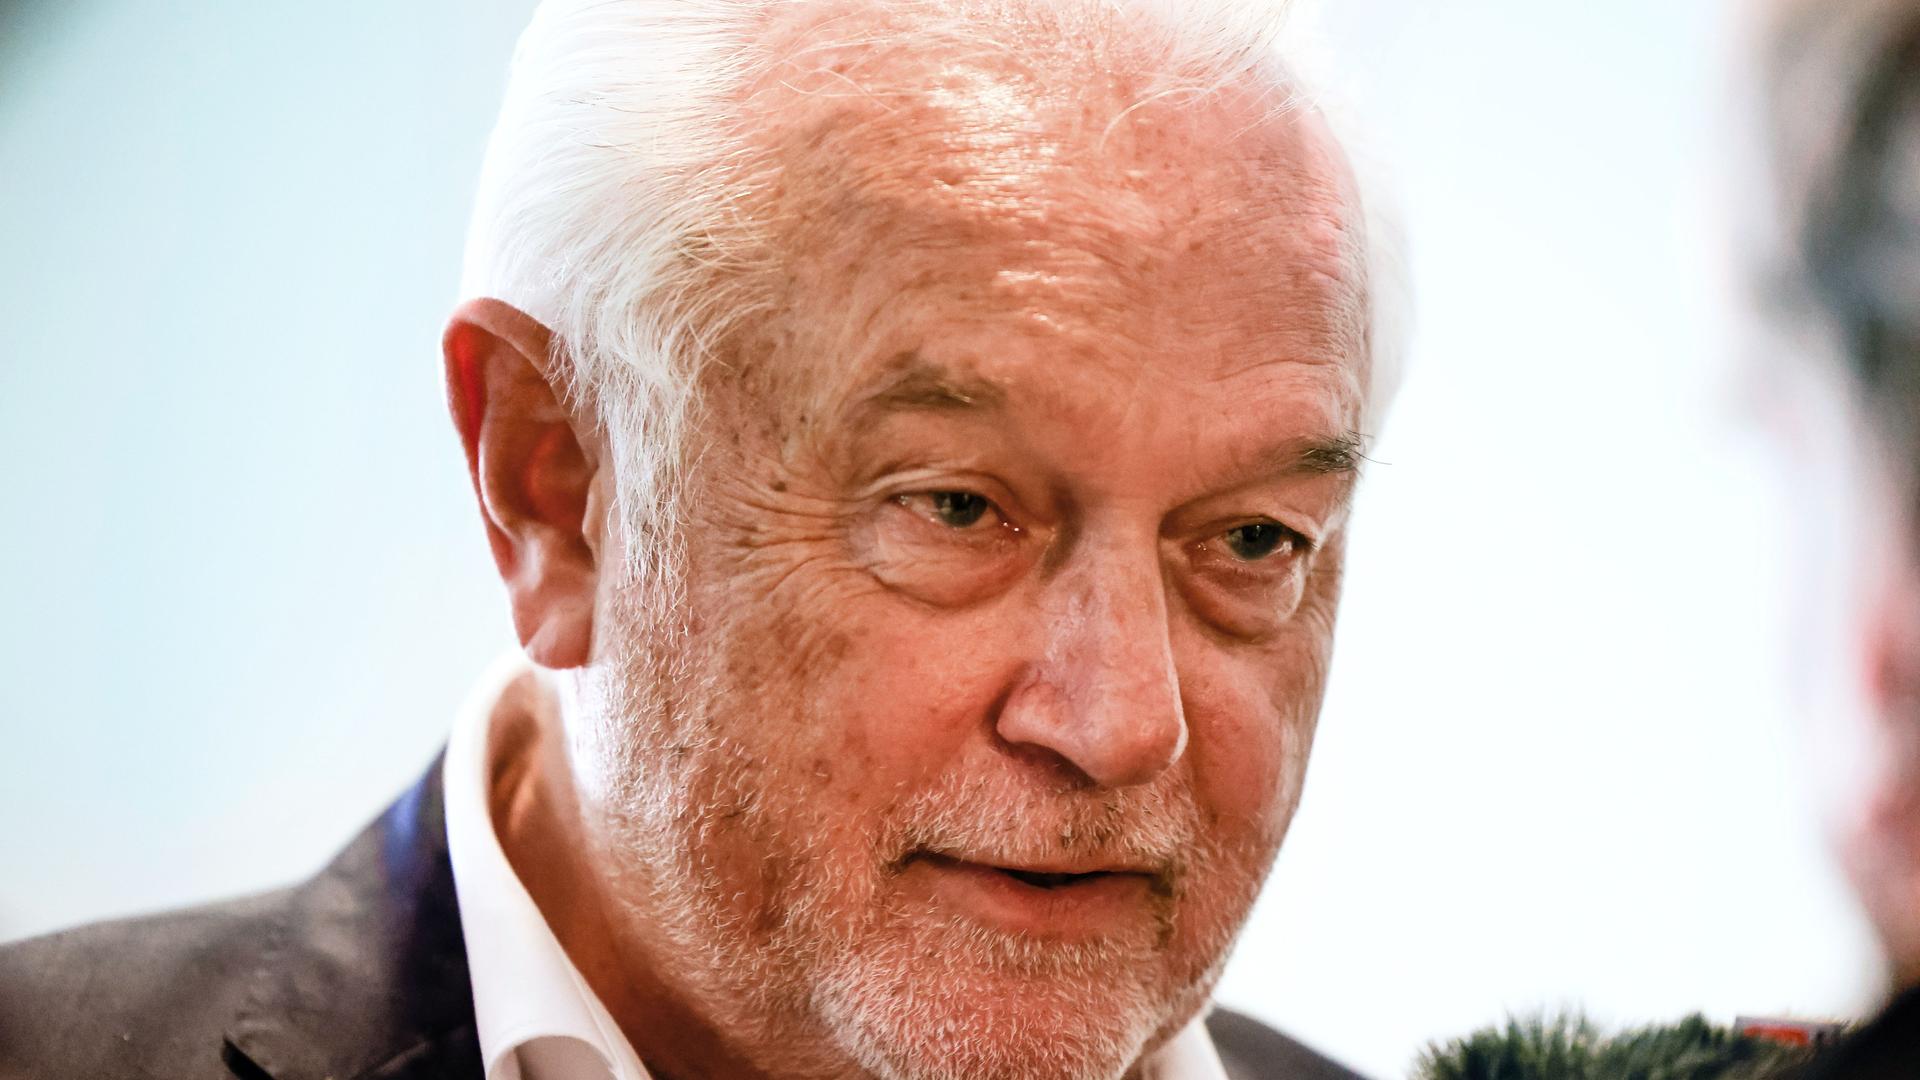 Der FDP-Politiker Wolfgang Kubicki.